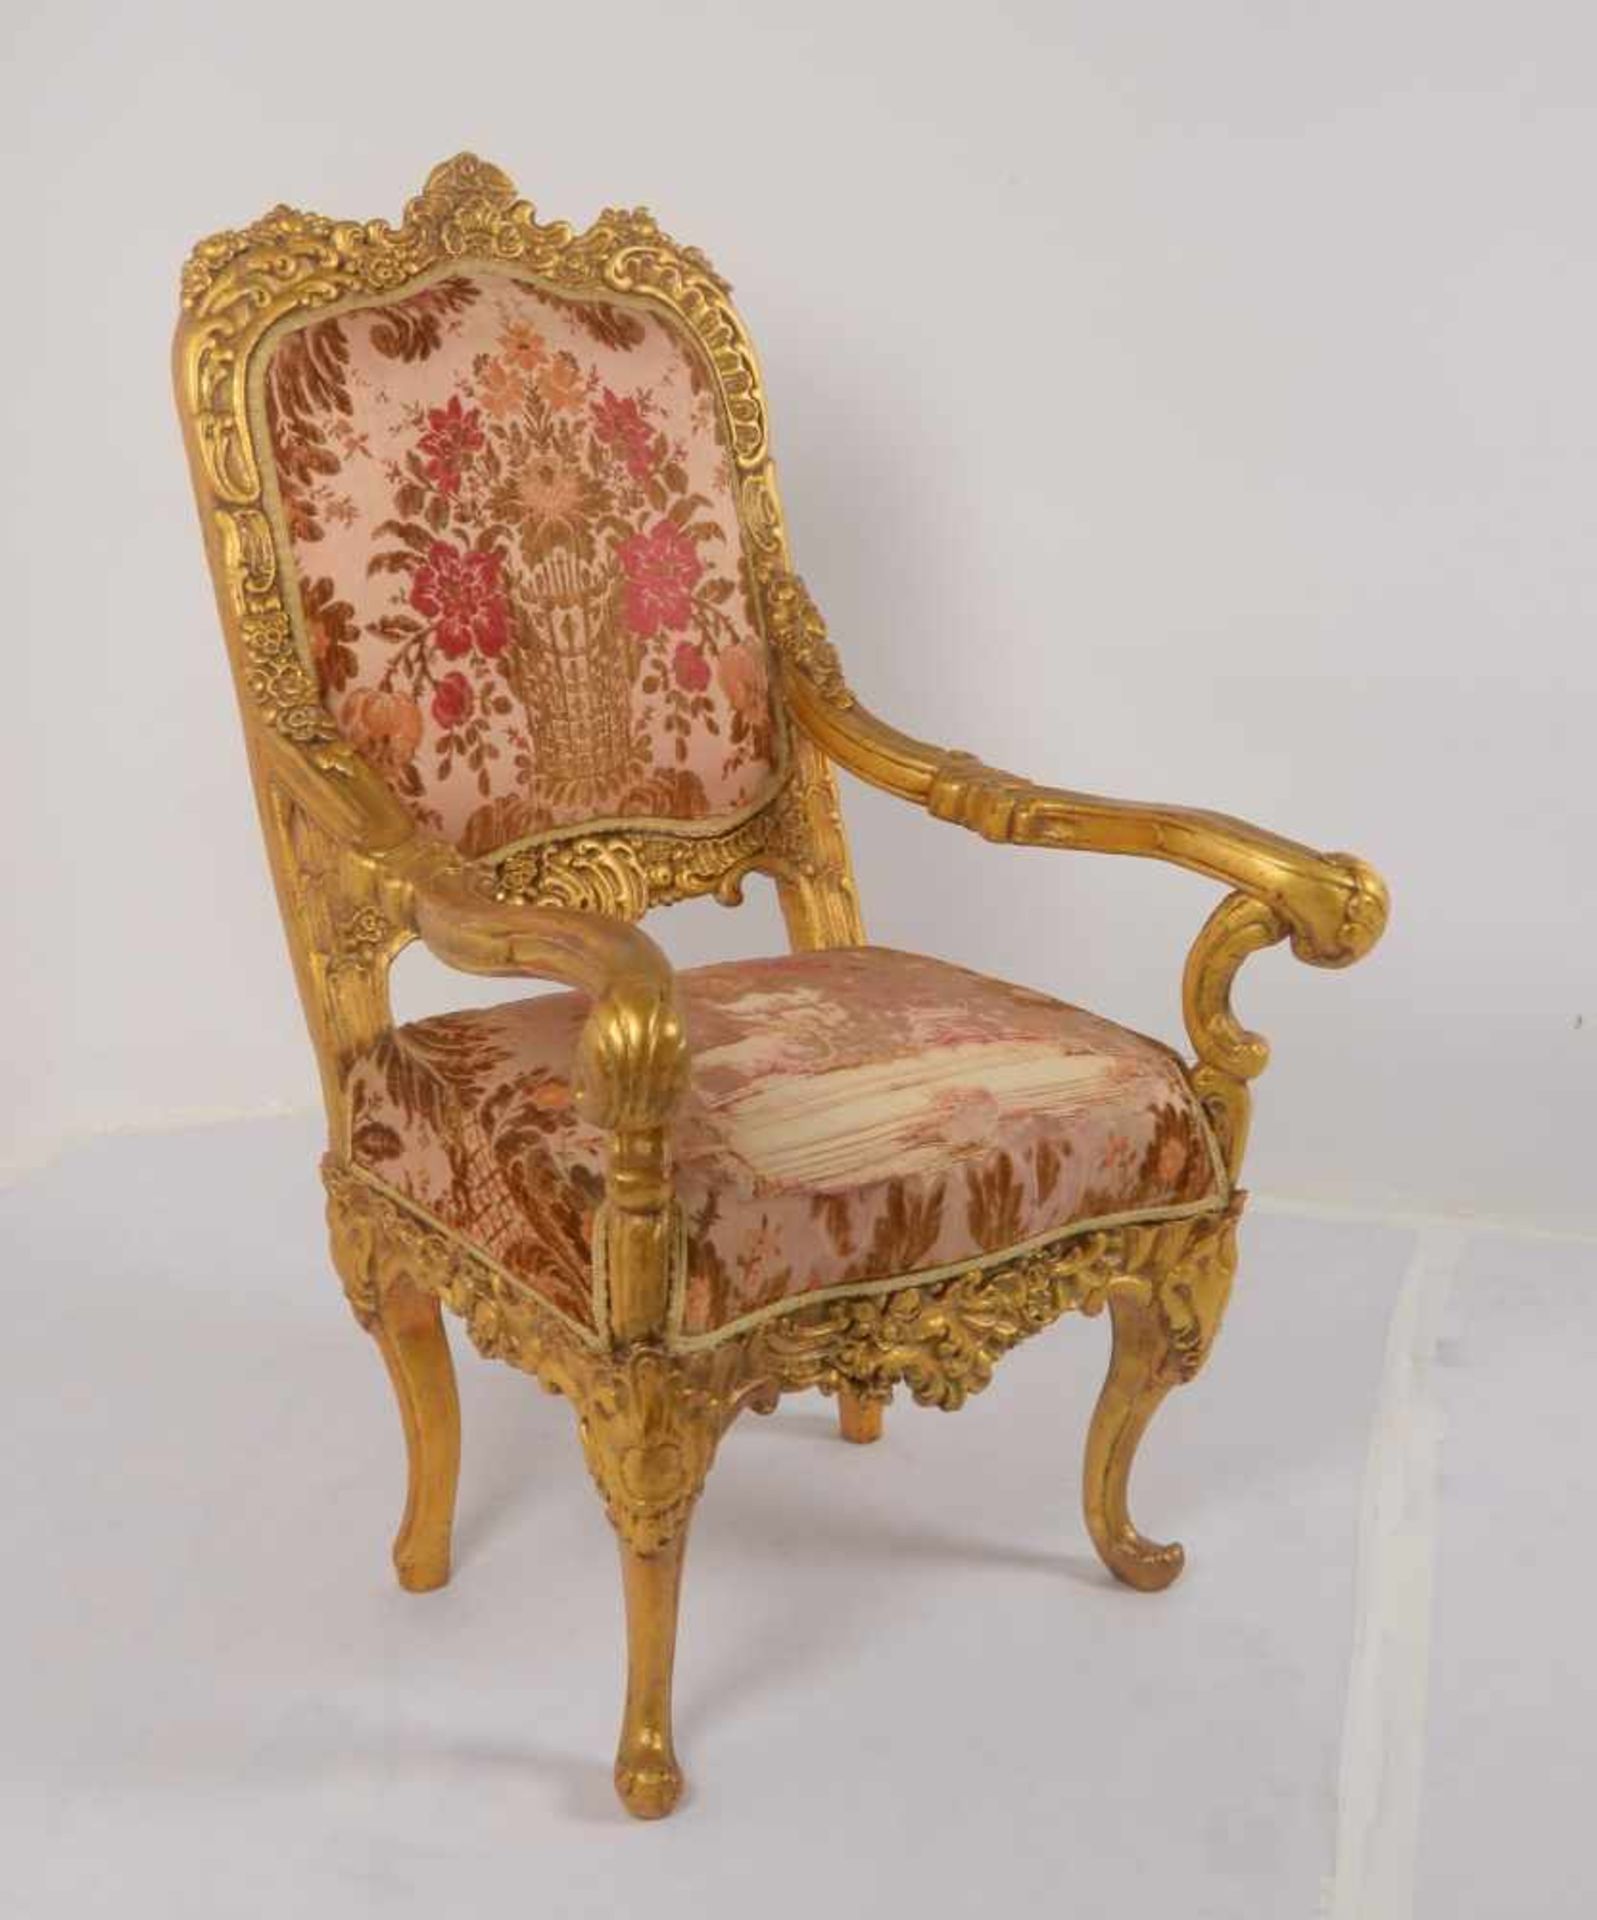 Prunksessel (Stilmöbel), Holz vergoldet, Rückenlehne und Sitzfläche stoffbezogen; Sitzhöhe 45 cm, - Bild 2 aus 2